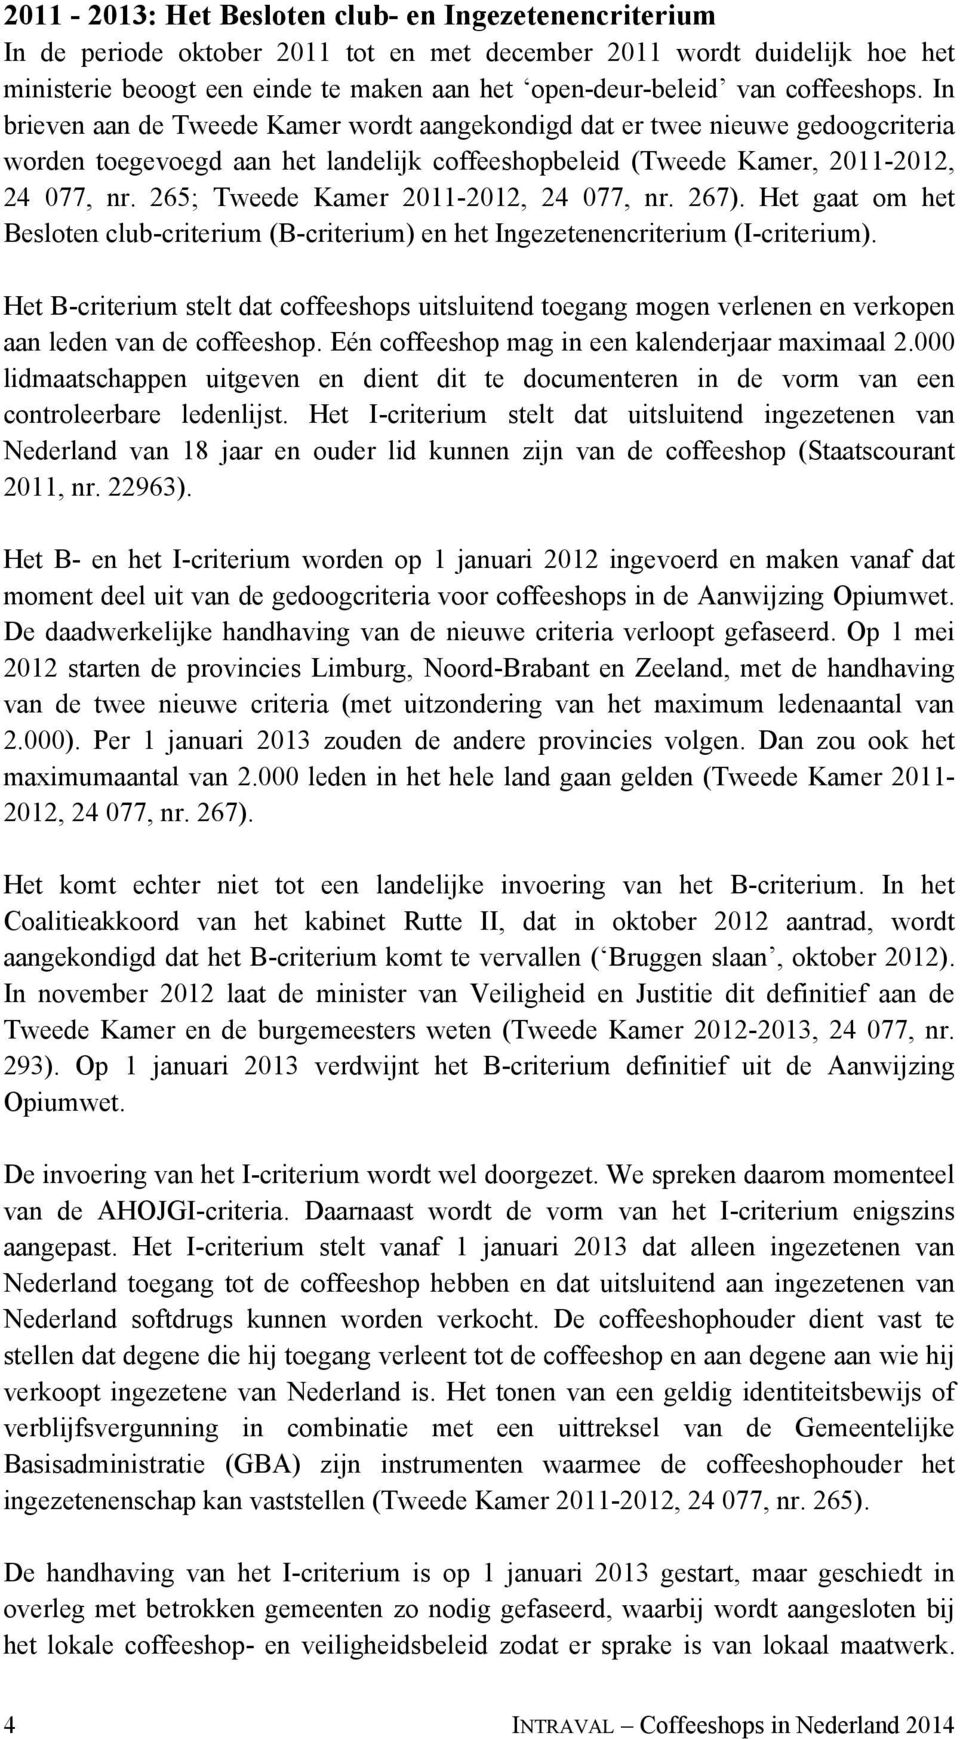 265; Tweede Kamer 2011-2012, 24 077, nr. 267). Het gaat om het Besloten club-criterium (B-criterium) en het Ingezetenencriterium (I-criterium).